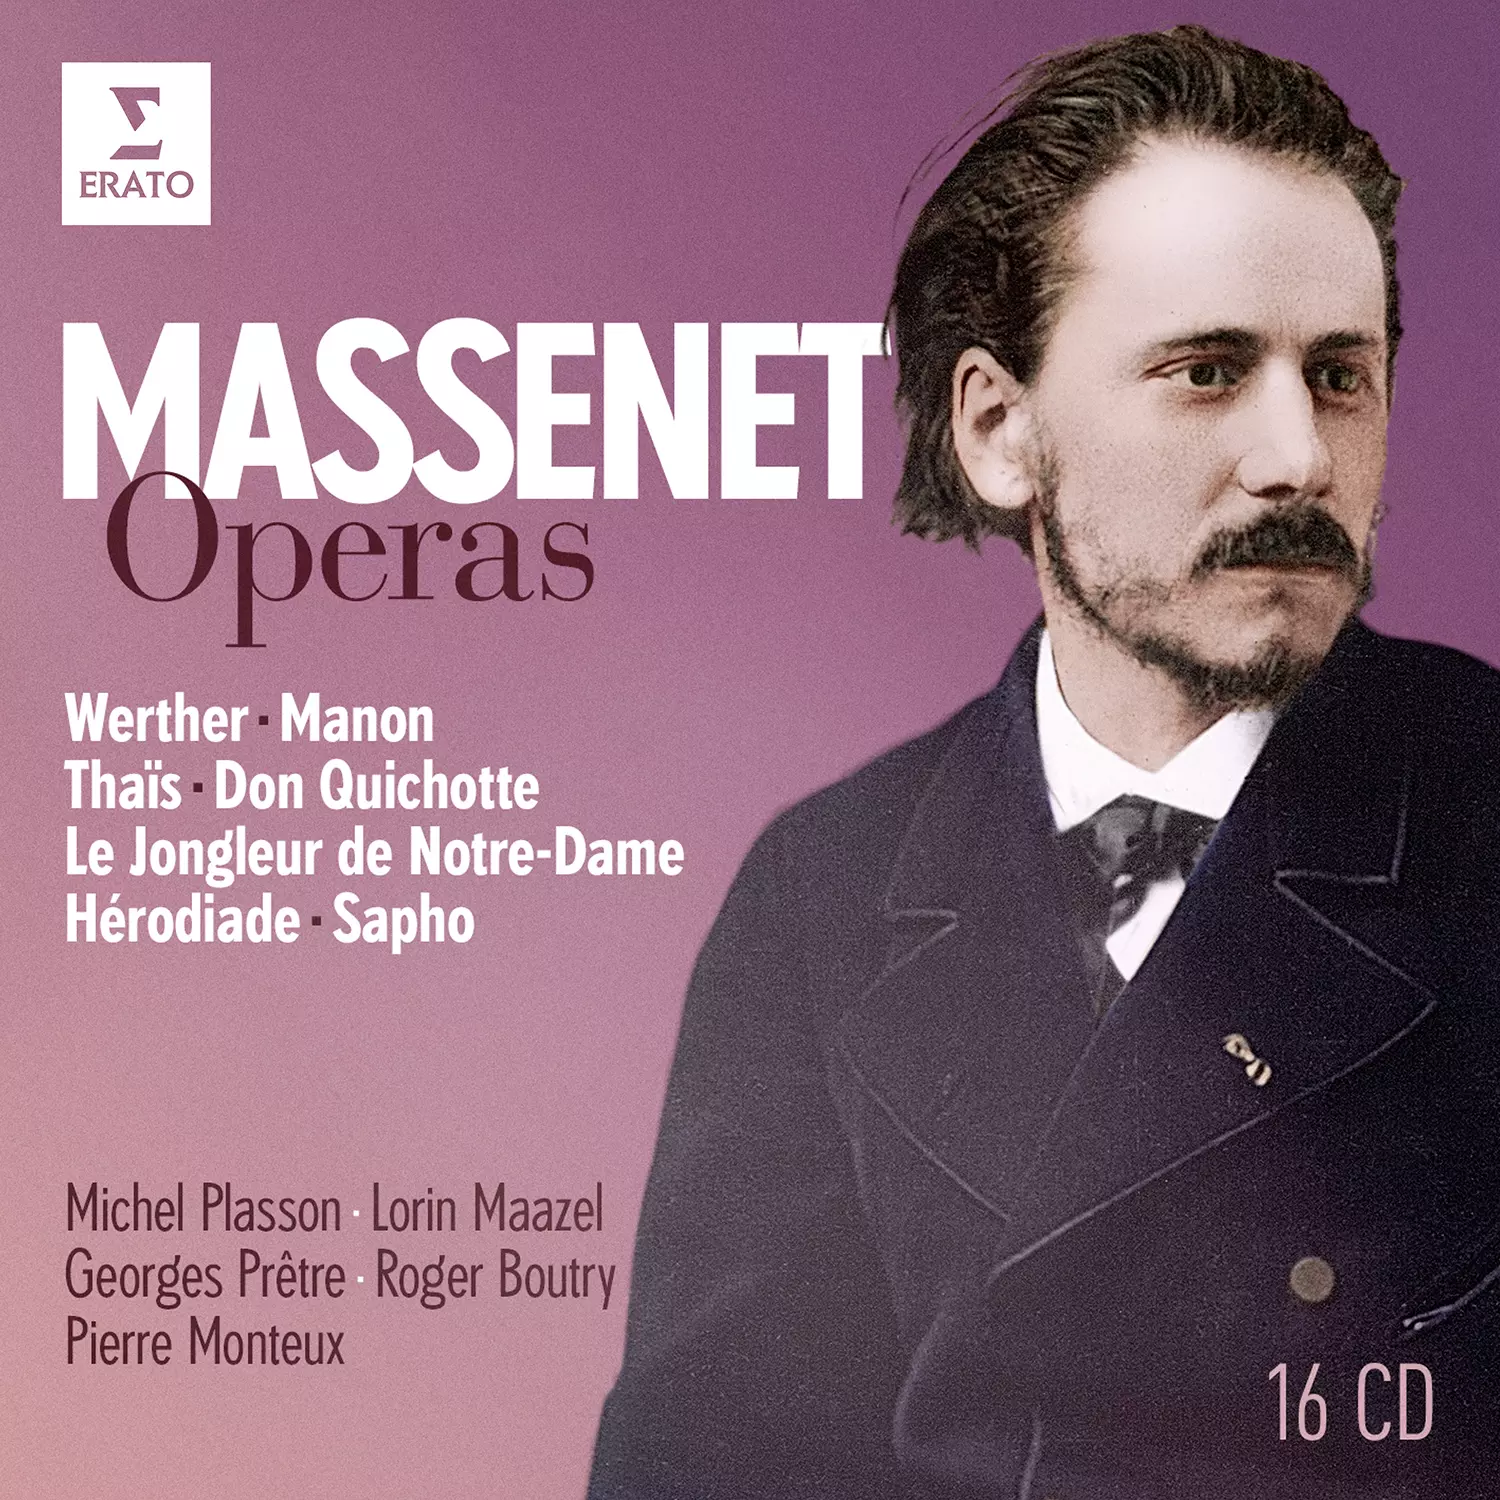 Massenet: Operas